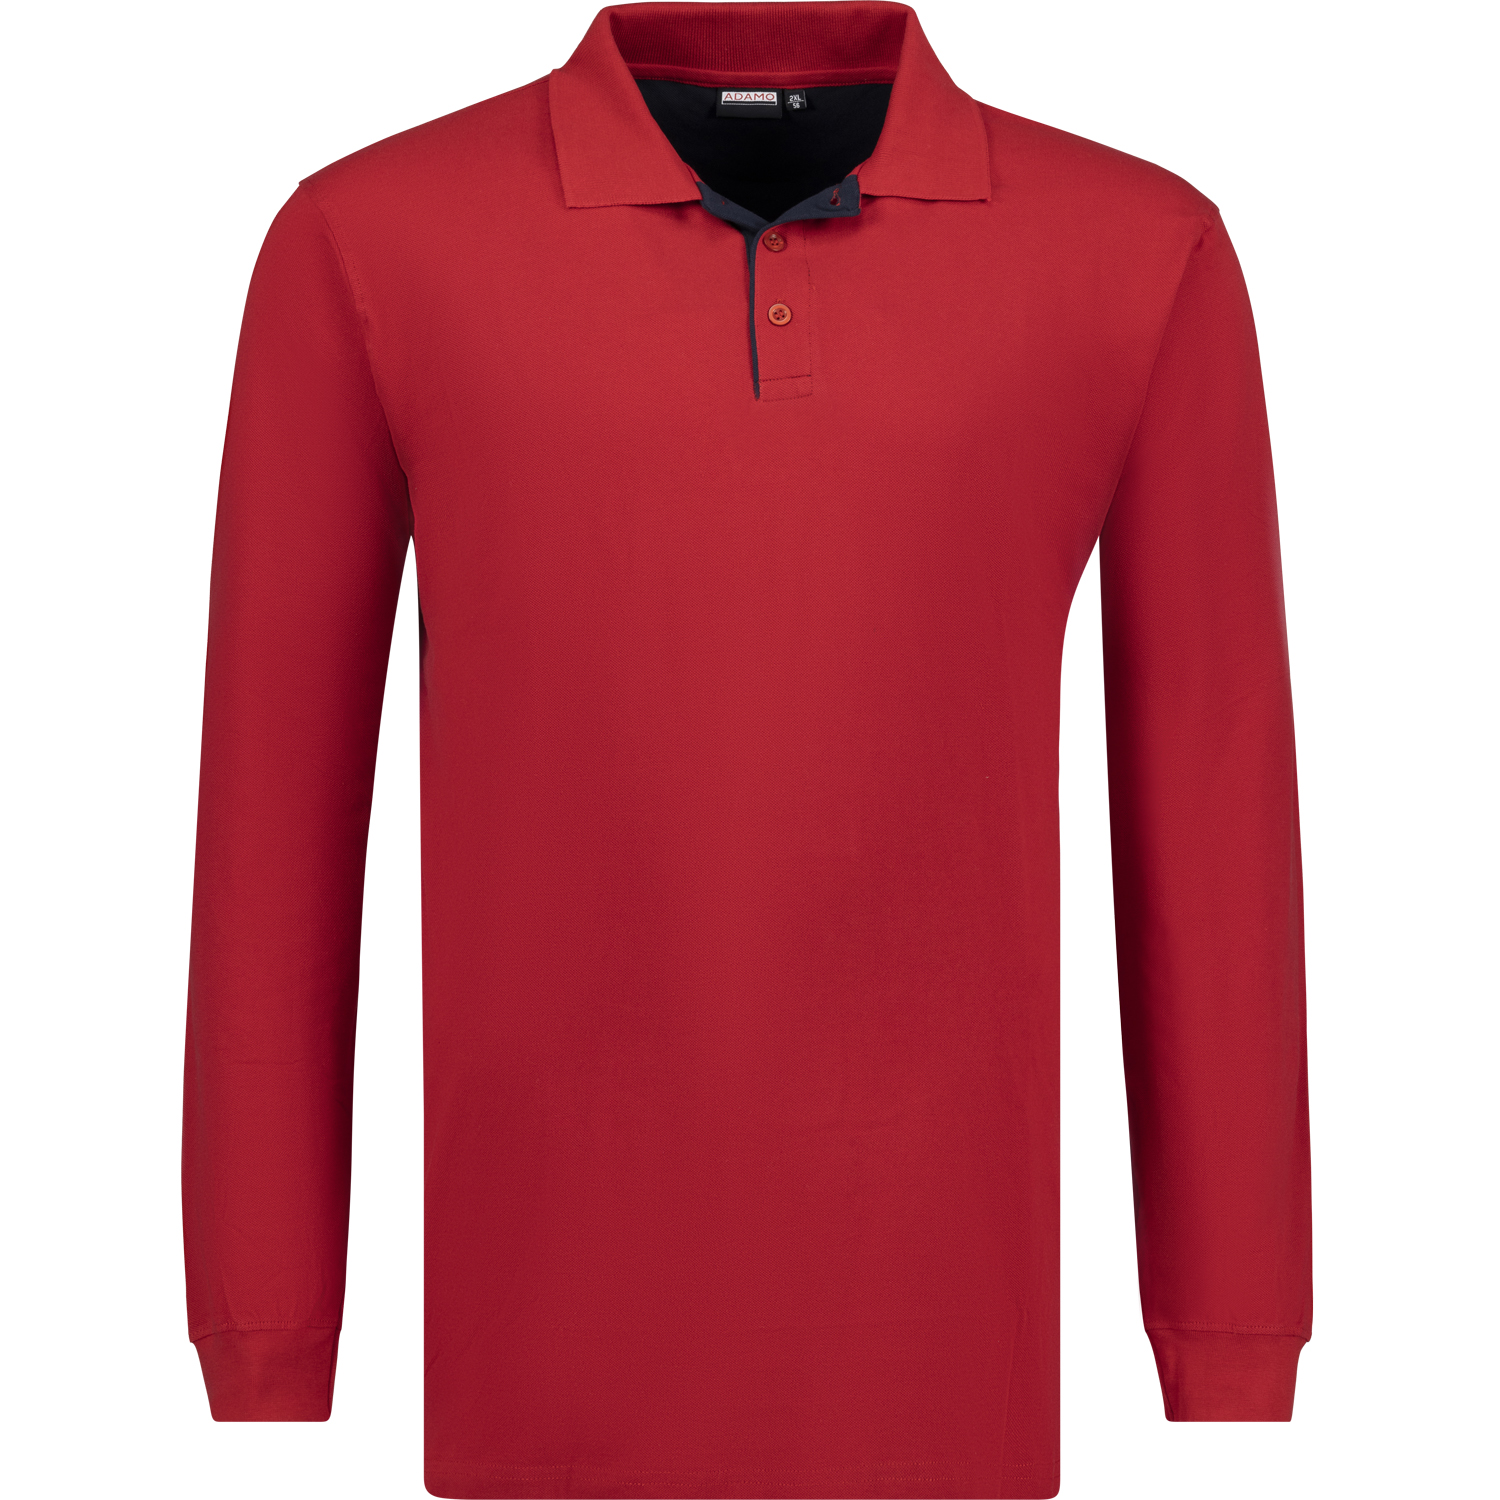 Pique Langarm Herren Poloshirt COMFORT FIT Serie Peter von Adamo in rot bis Übergröße 12XL